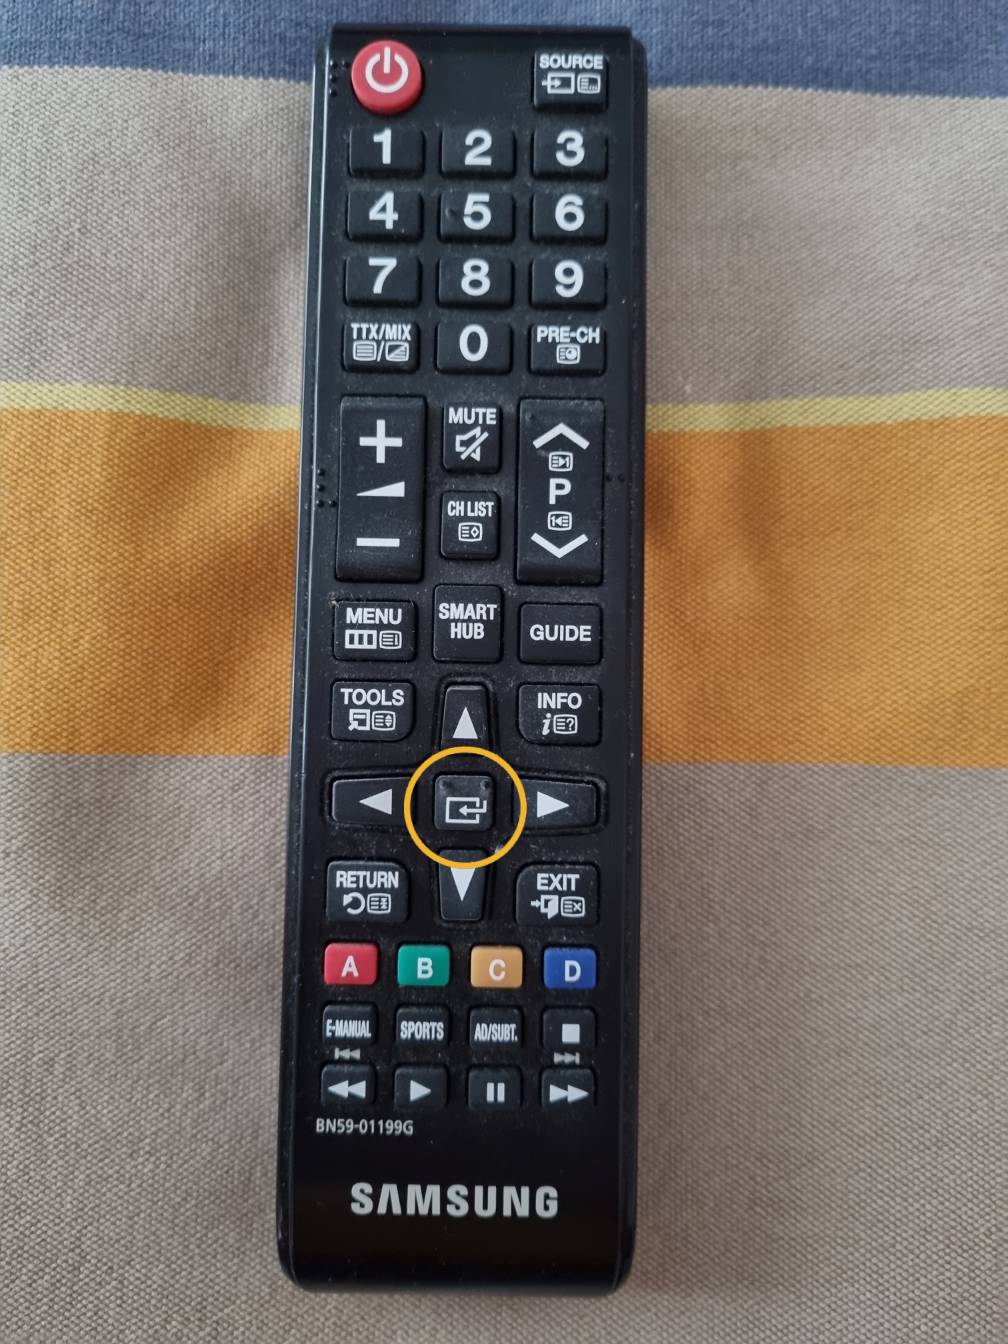 Vhbw Télécommande multifonction remplacement pour Samsung BN59-01247A pour  Home cinéma télévision Blu-Ray Hi-Fi